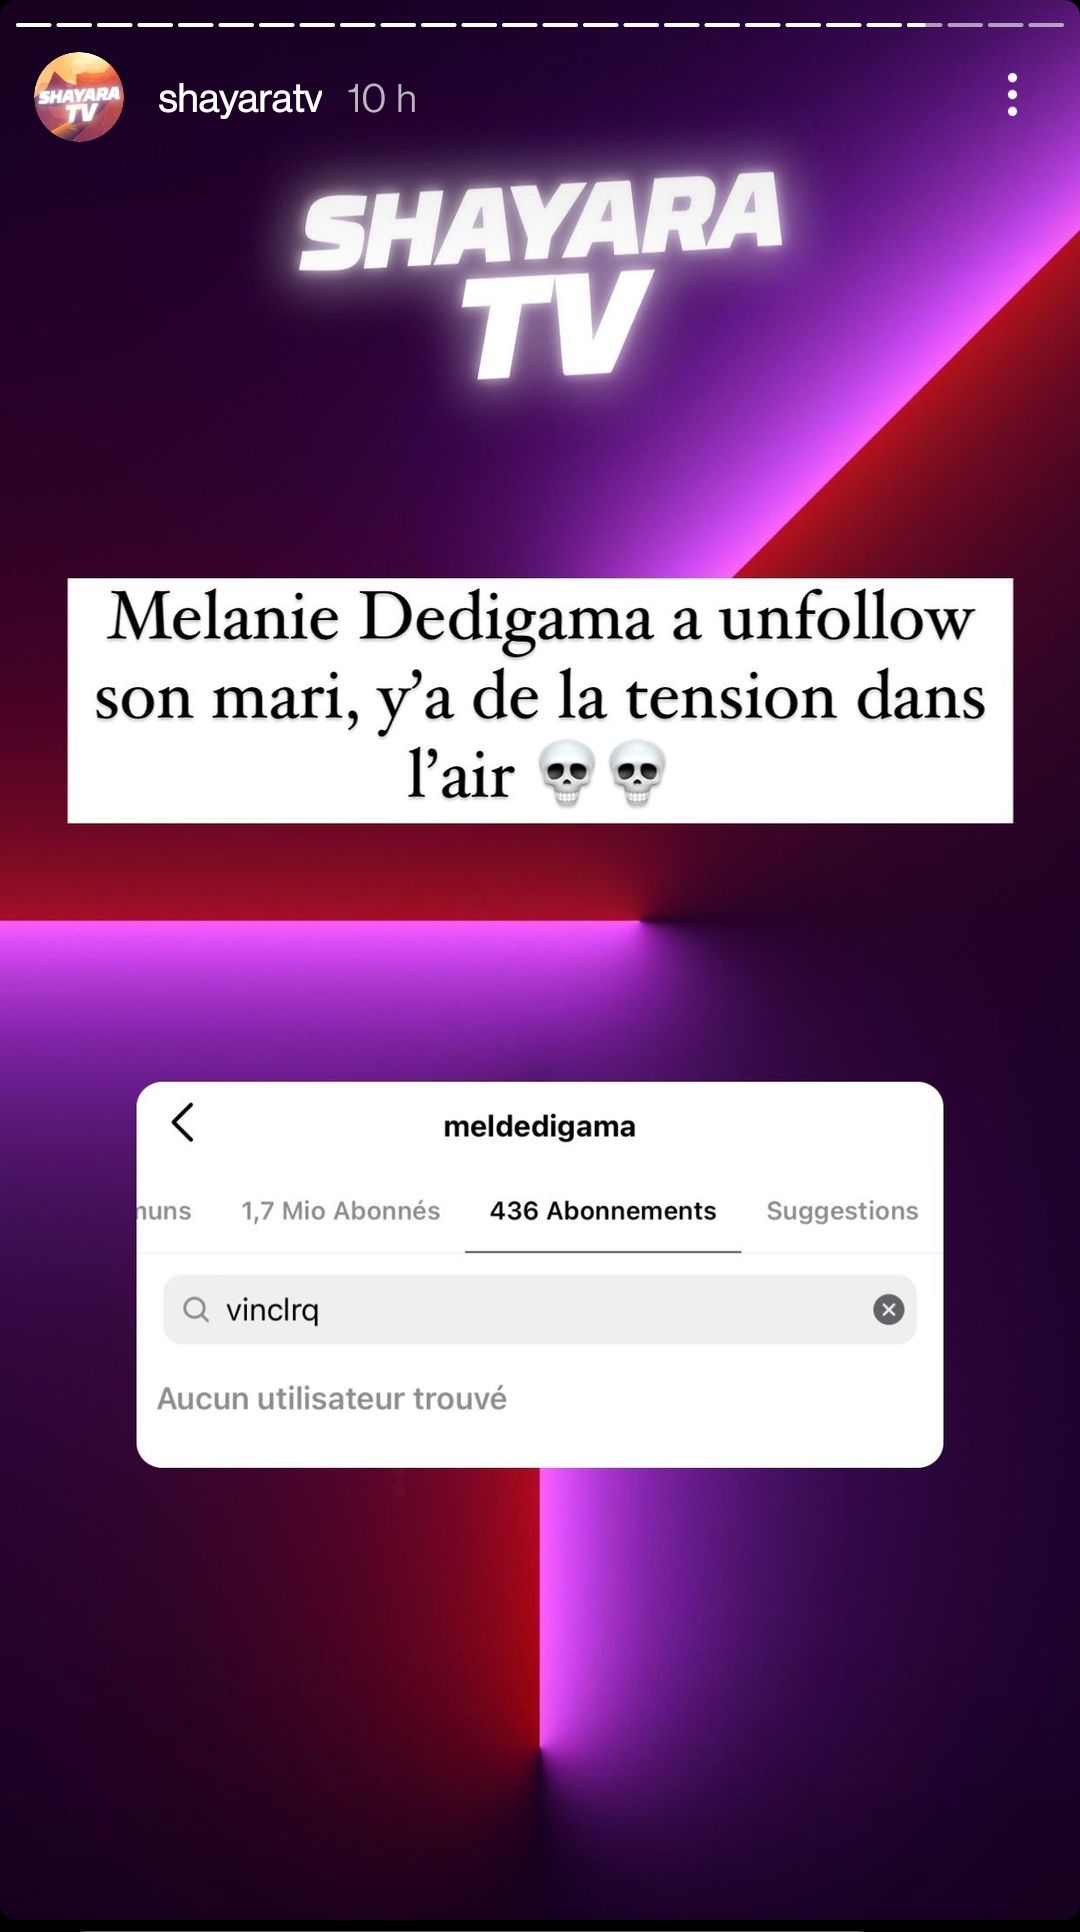  Mélanie Dedigala ne suit plus Vincent sur Instagram @Instagram